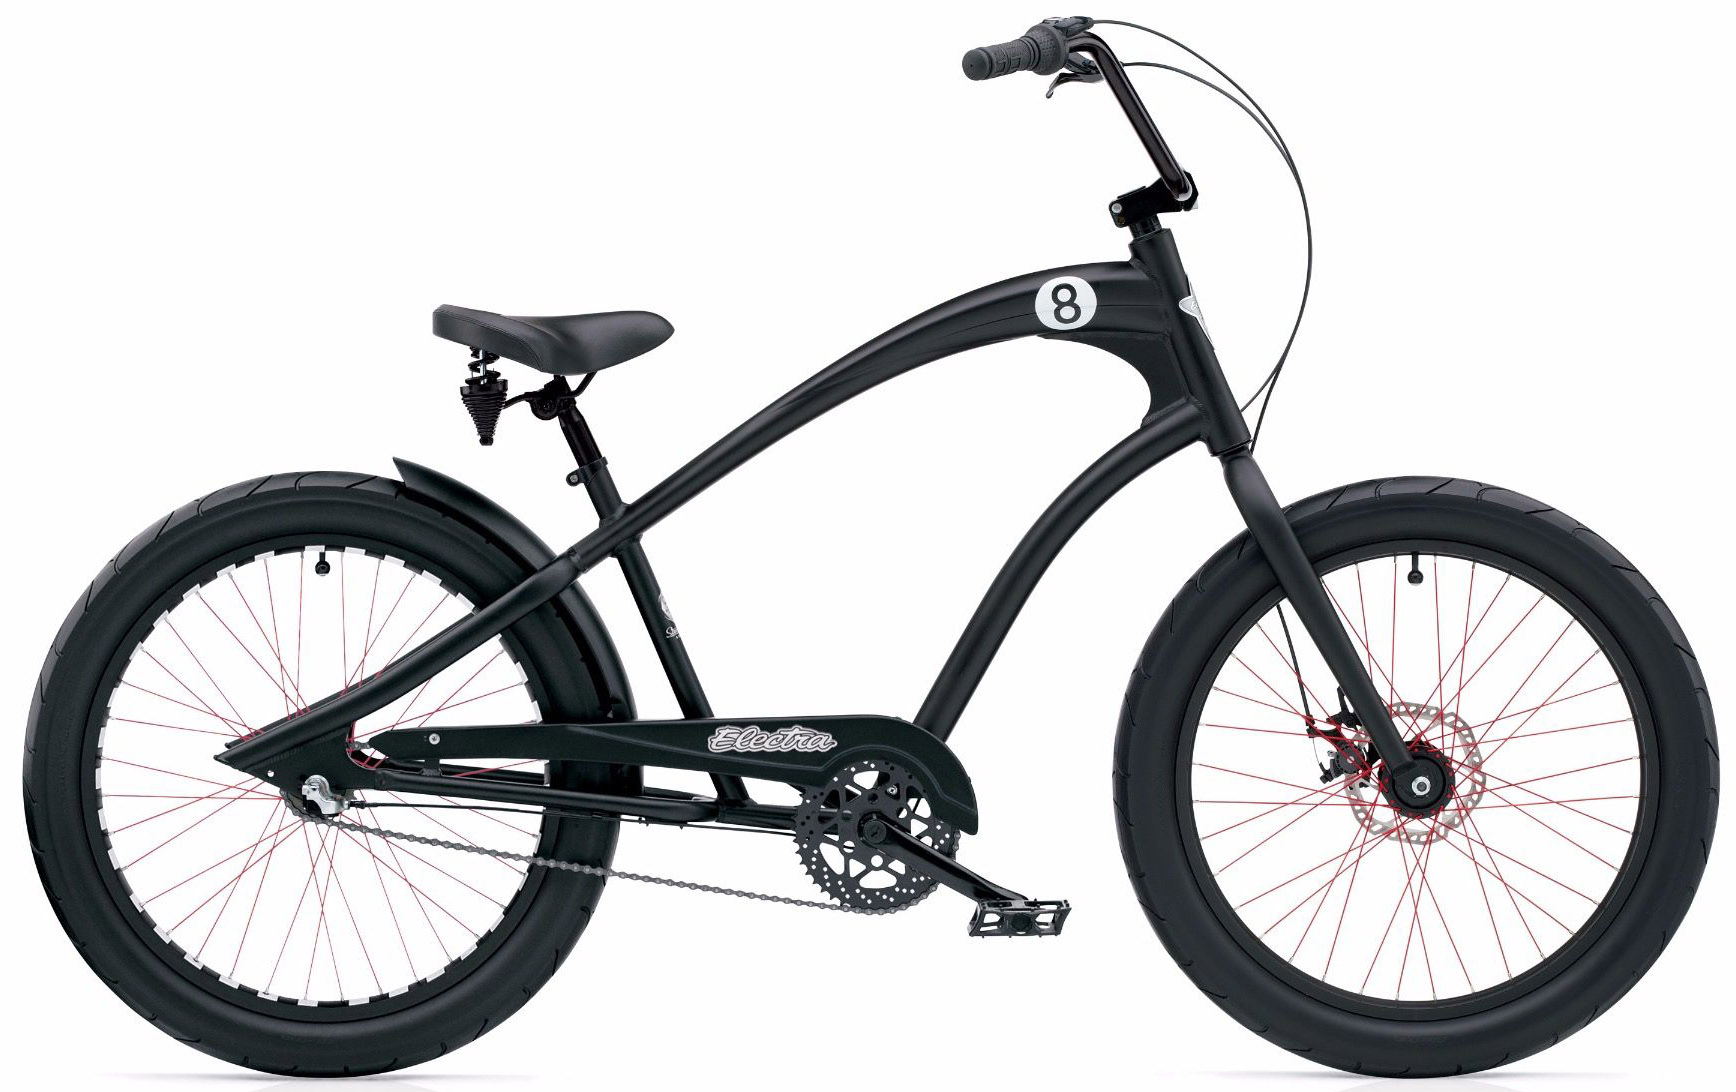  Отзывы о Городском велосипеде Electra Straight 8 3i 2020